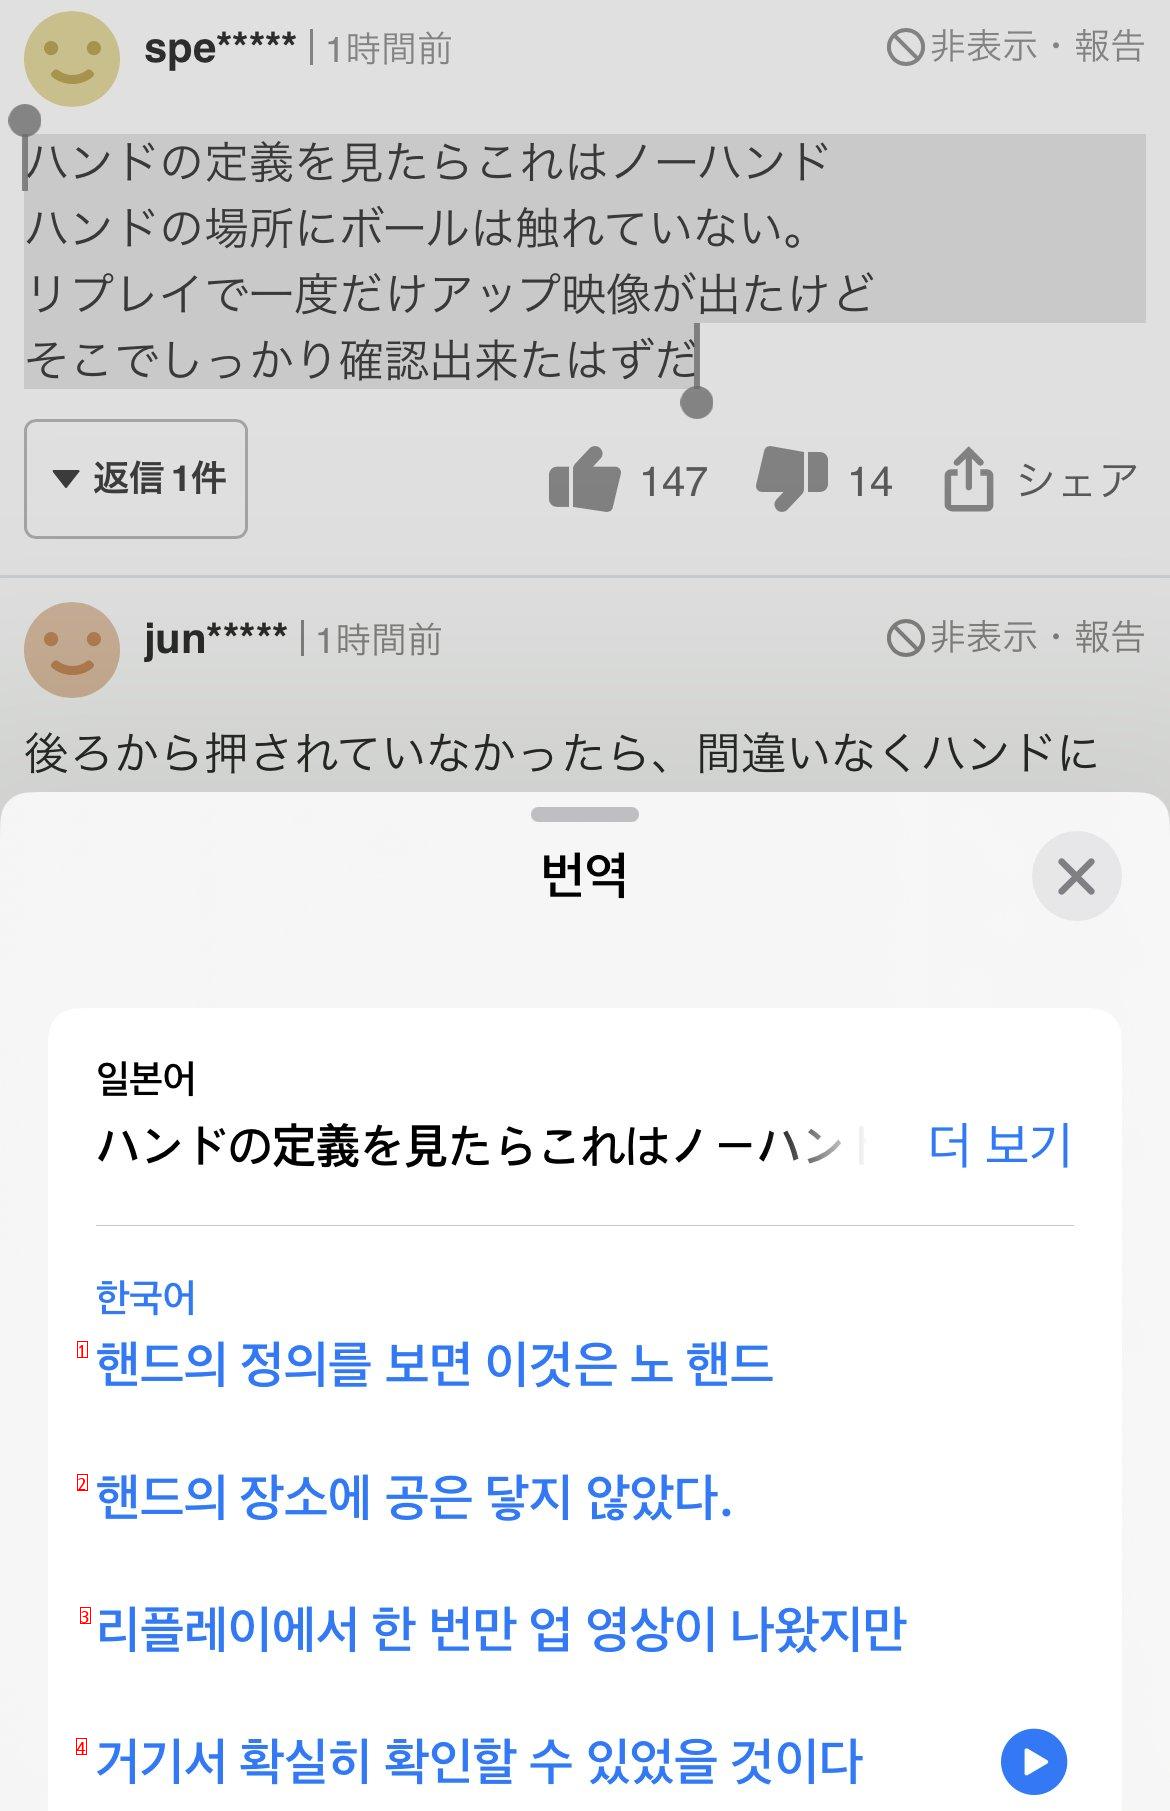 일뽕 멸망!!!! 이 축알못 새끼들아 ft.일본 반응